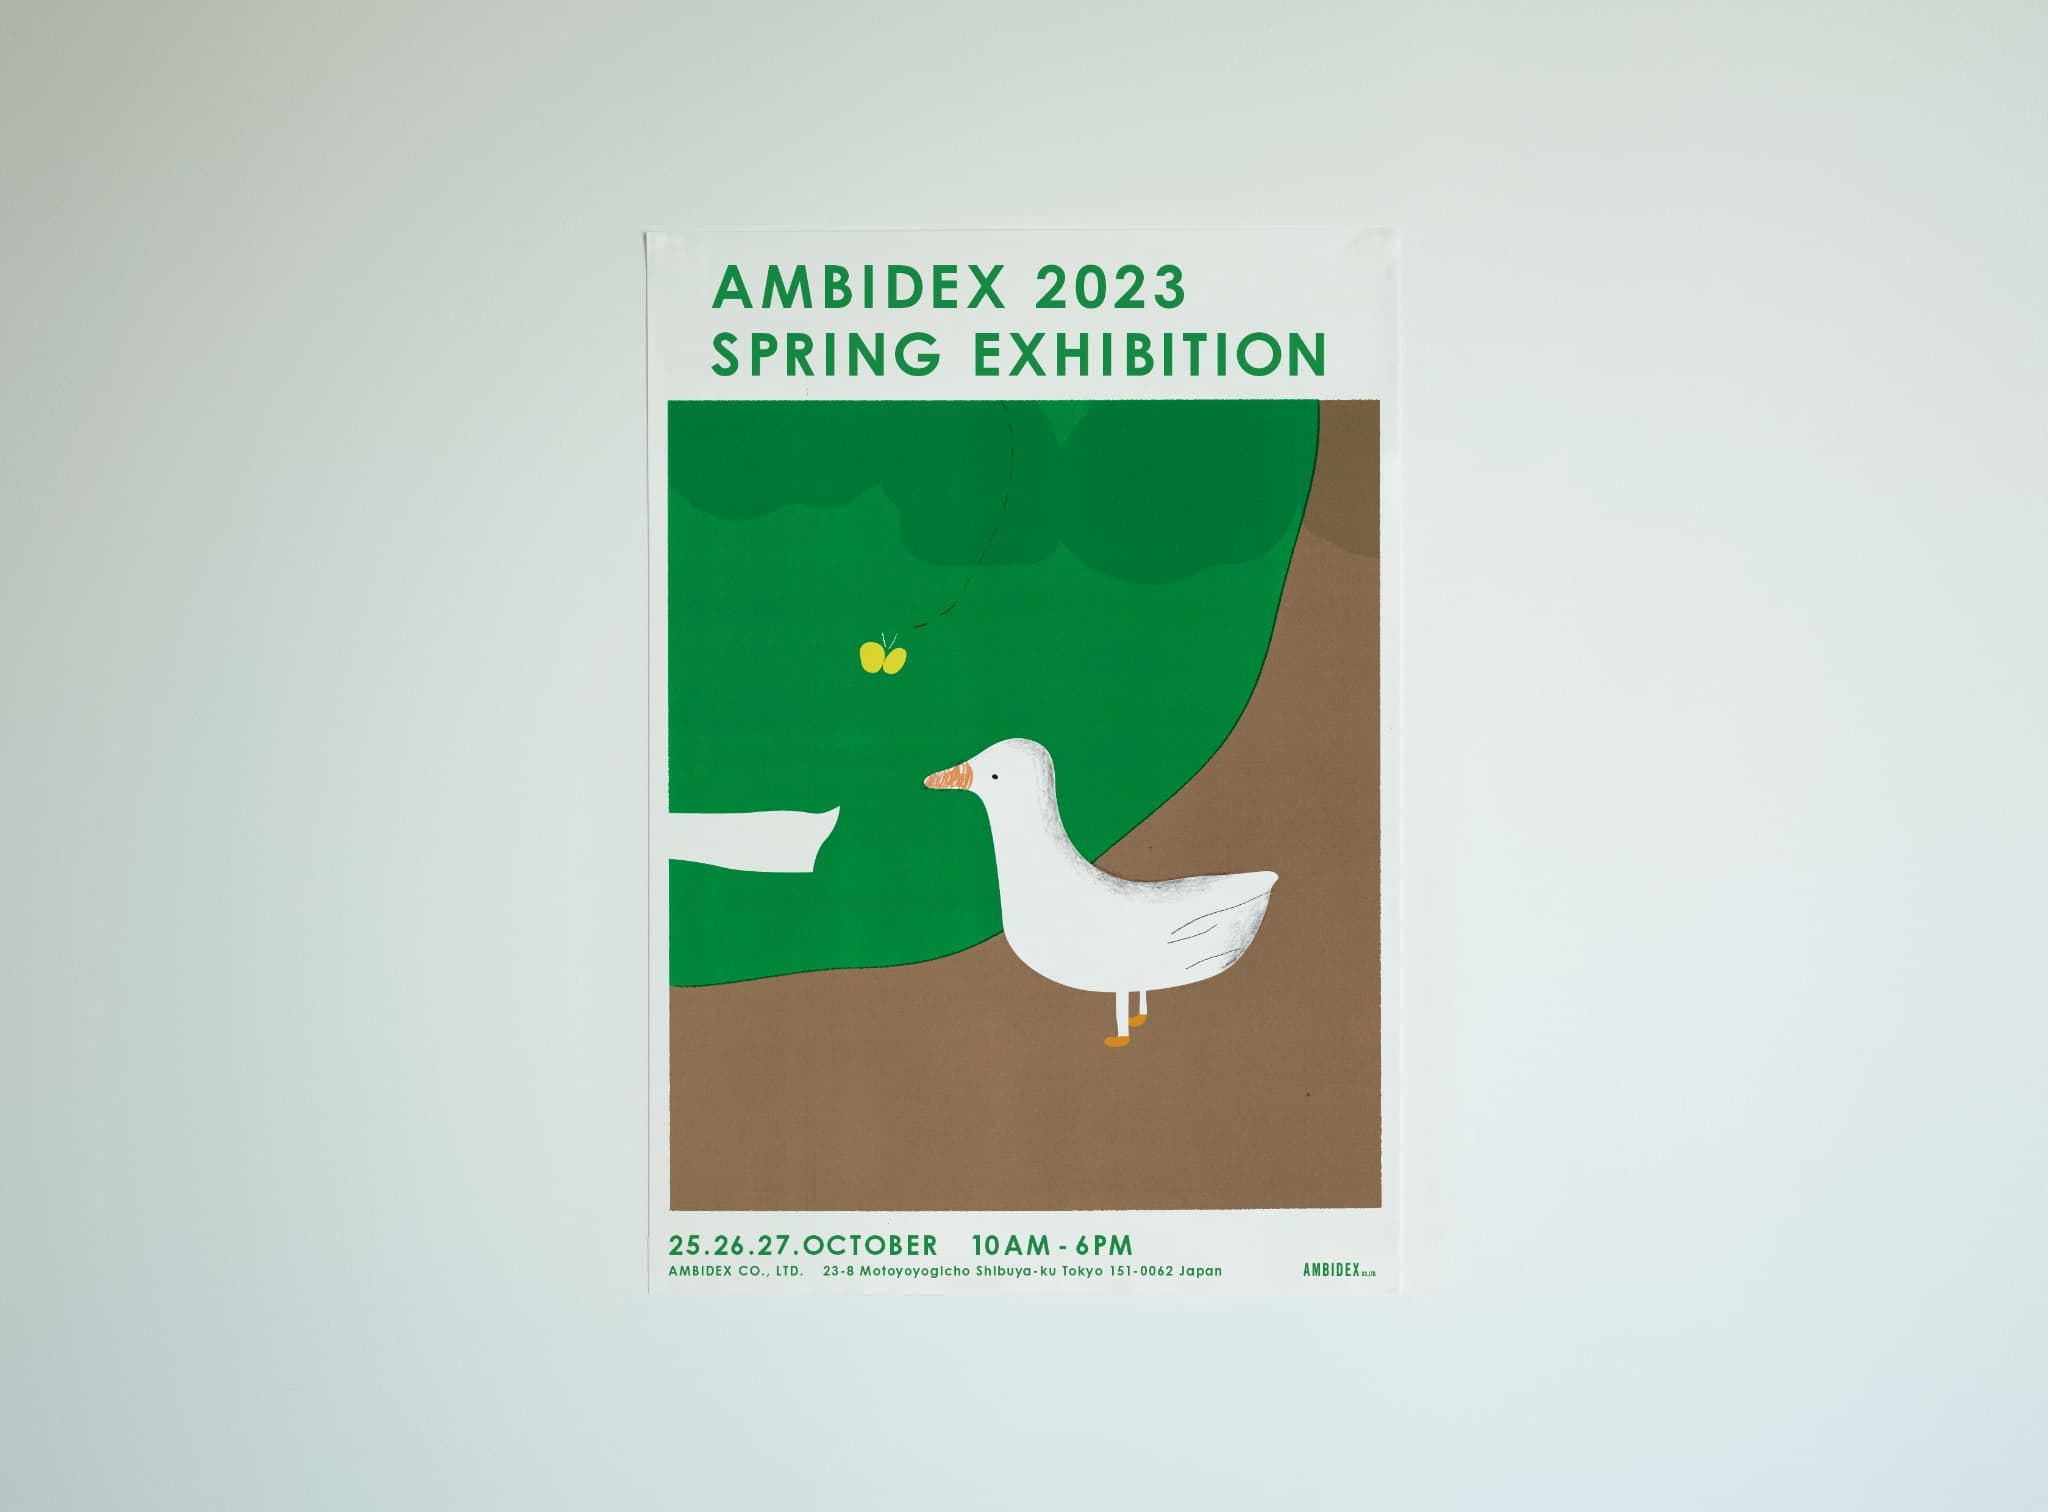 AMBIDEX 2023 SPRING EXHIBITION